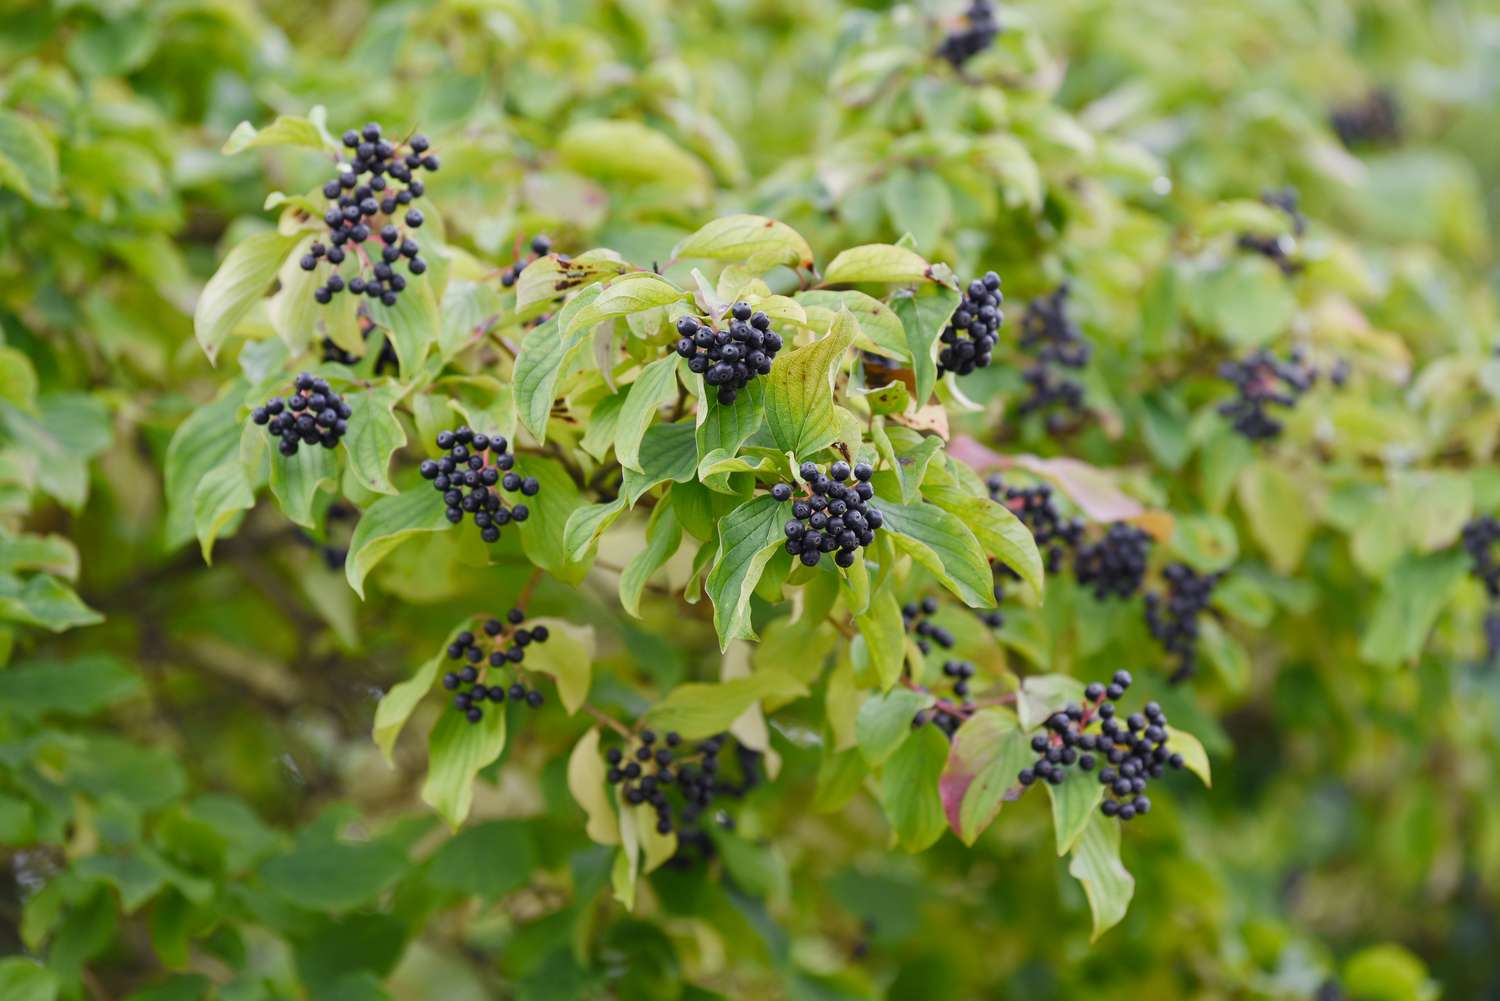 Hartriegelbaum mit dunkelblauen Beerenbüscheln und Blättern an den Zweigen